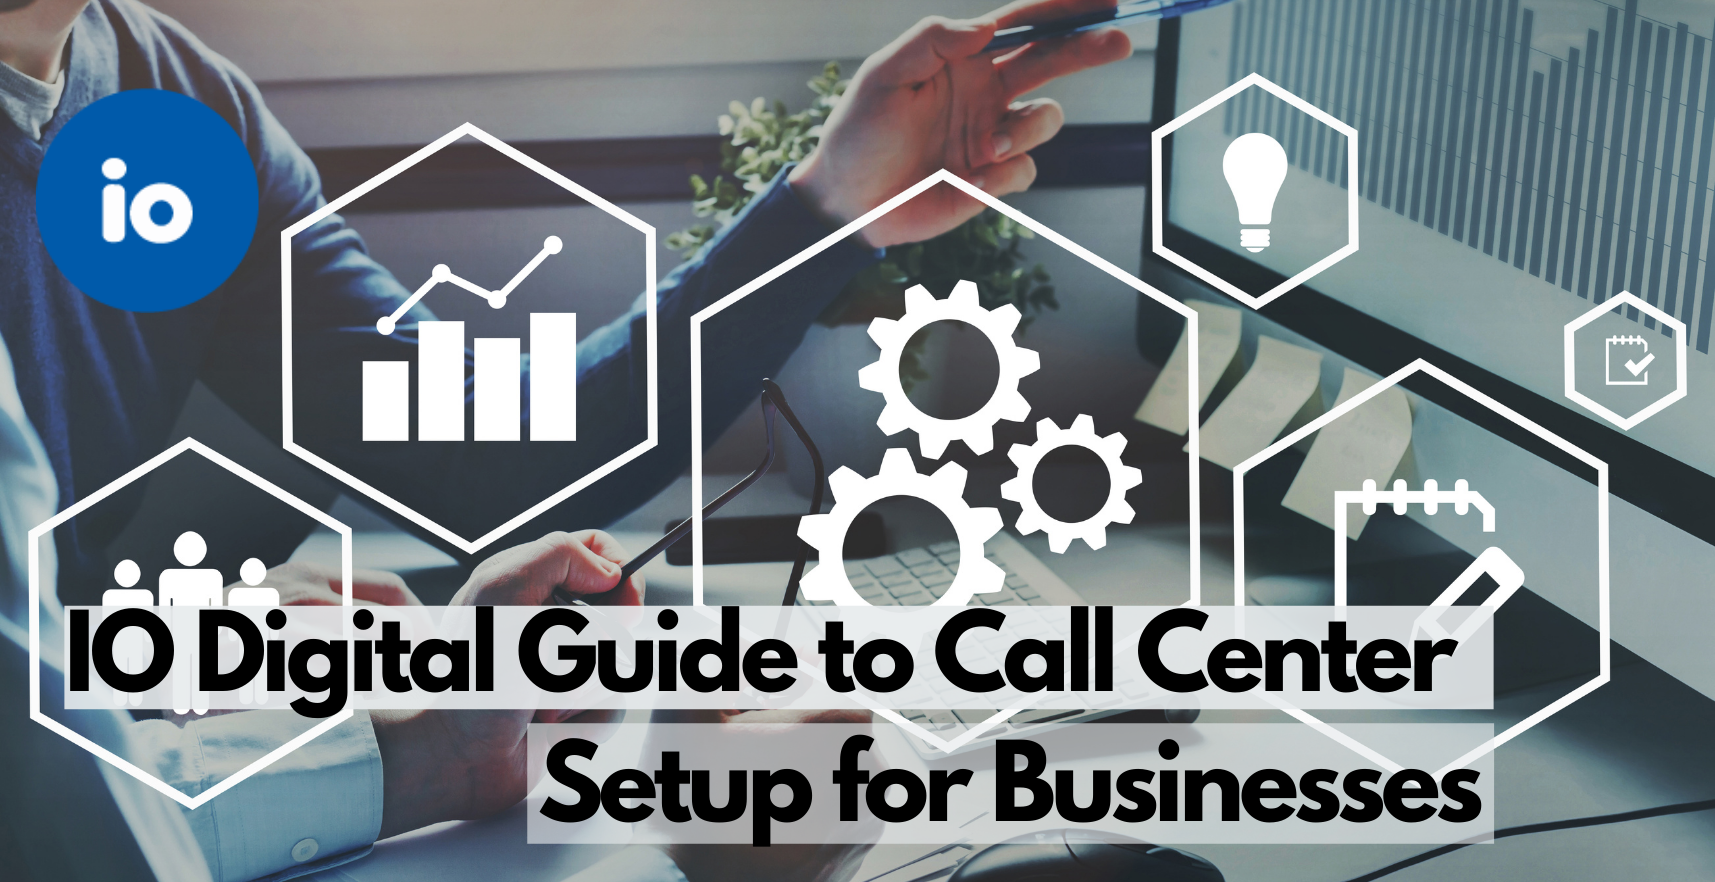 Call Center Setup for Businesses